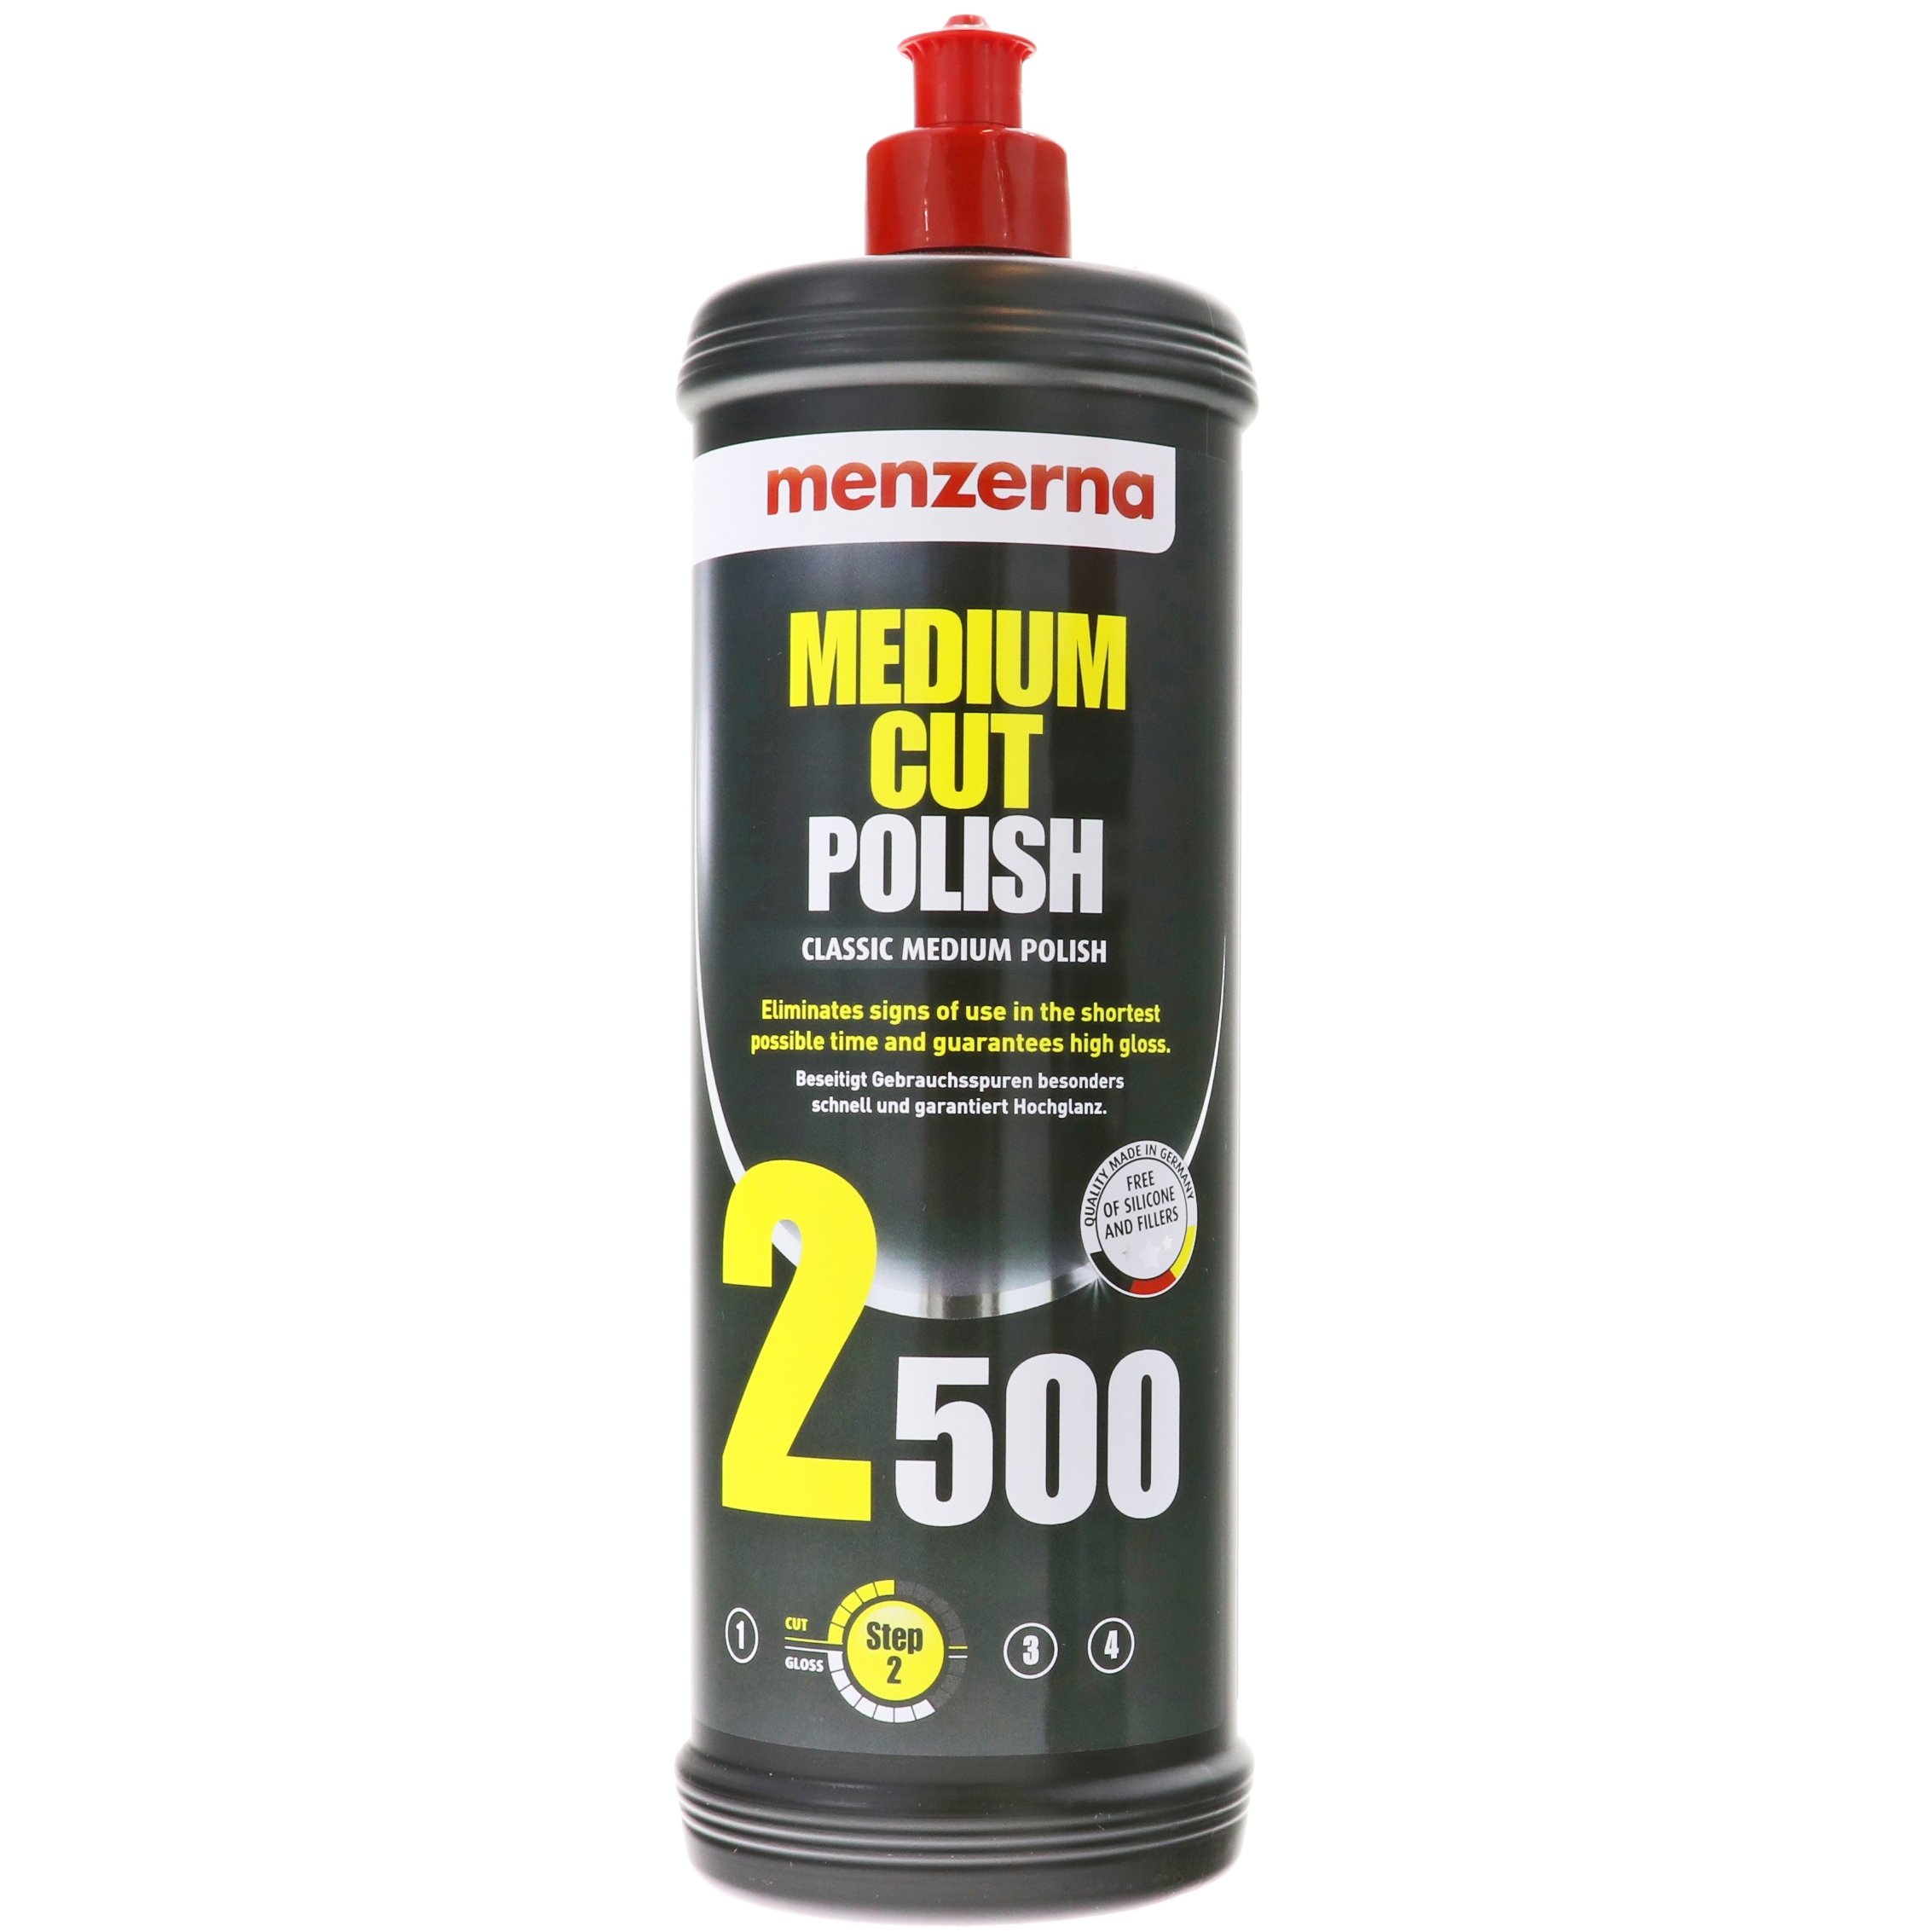 Medium Cut Polish 2500 - 1000ml